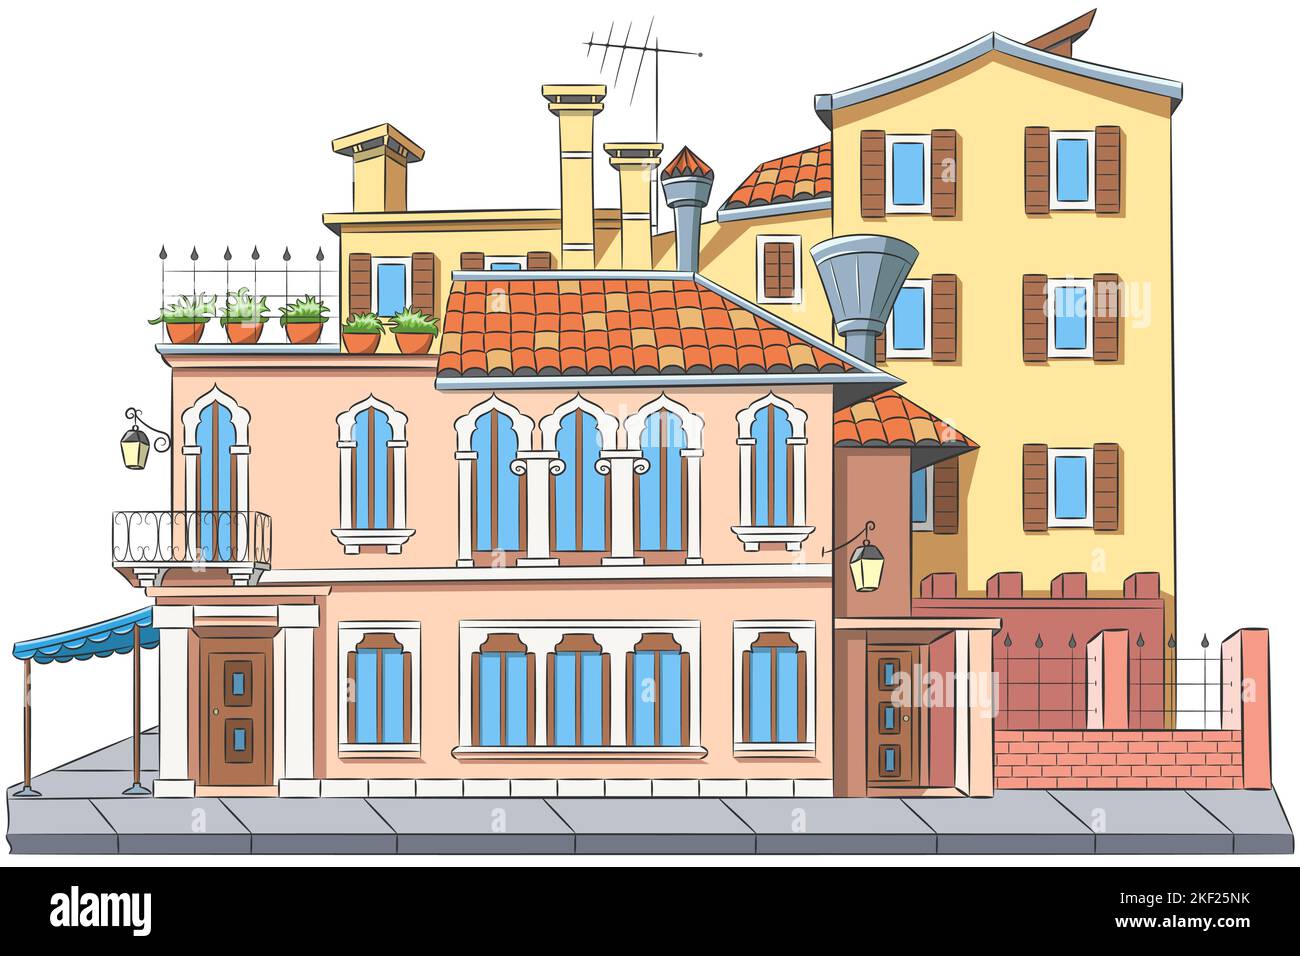 Facciate multicolore di vecchie case tradizionali colorate isolate su sfondo bianco. Venezia. Italia. Illustrazione vettoriale. Illustrazione Vettoriale